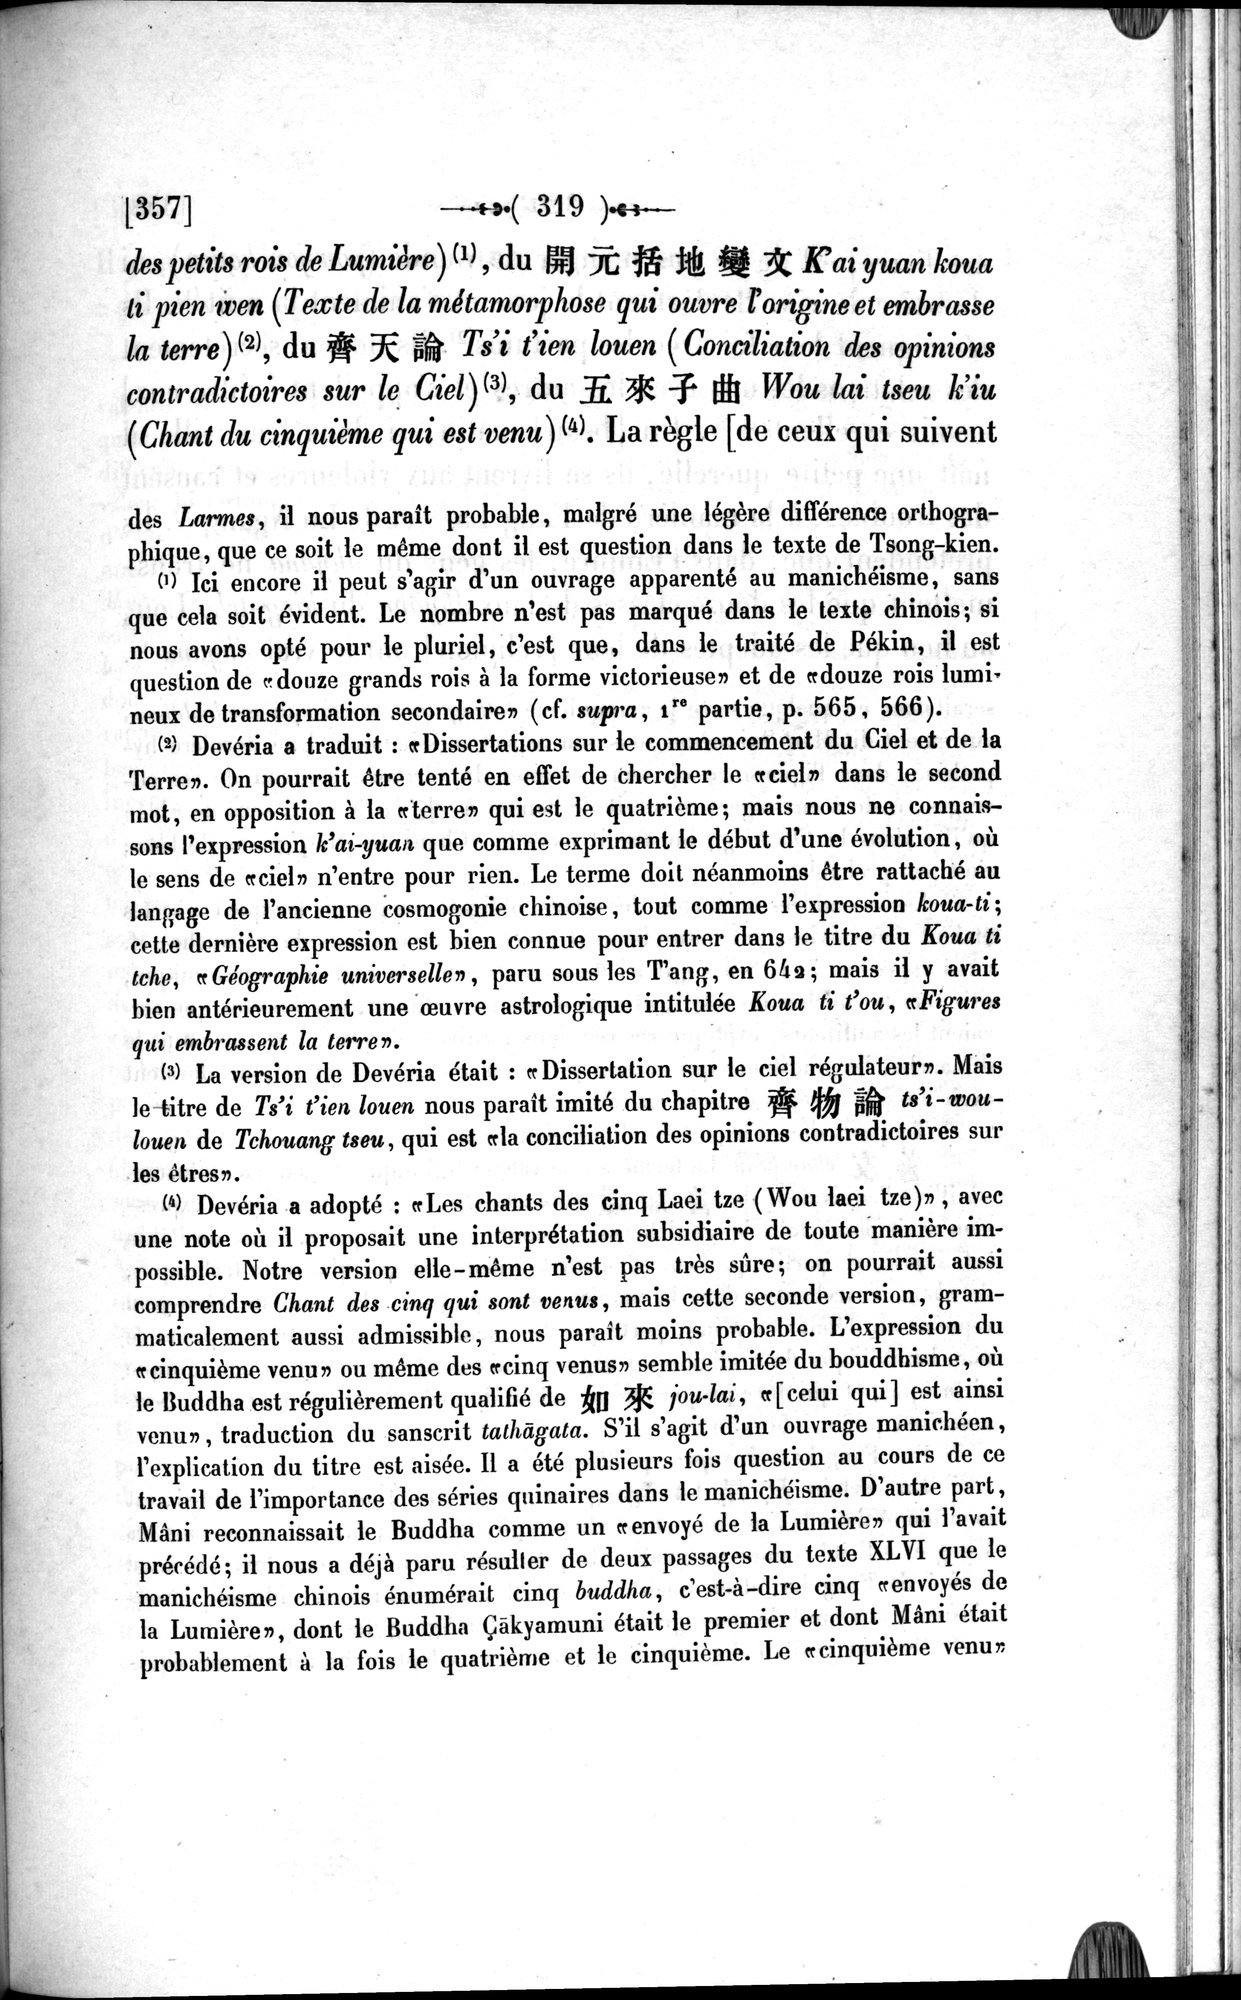 Un traité manichéen retrouvé en Chine : vol.1 / Page 329 (Grayscale High Resolution Image)